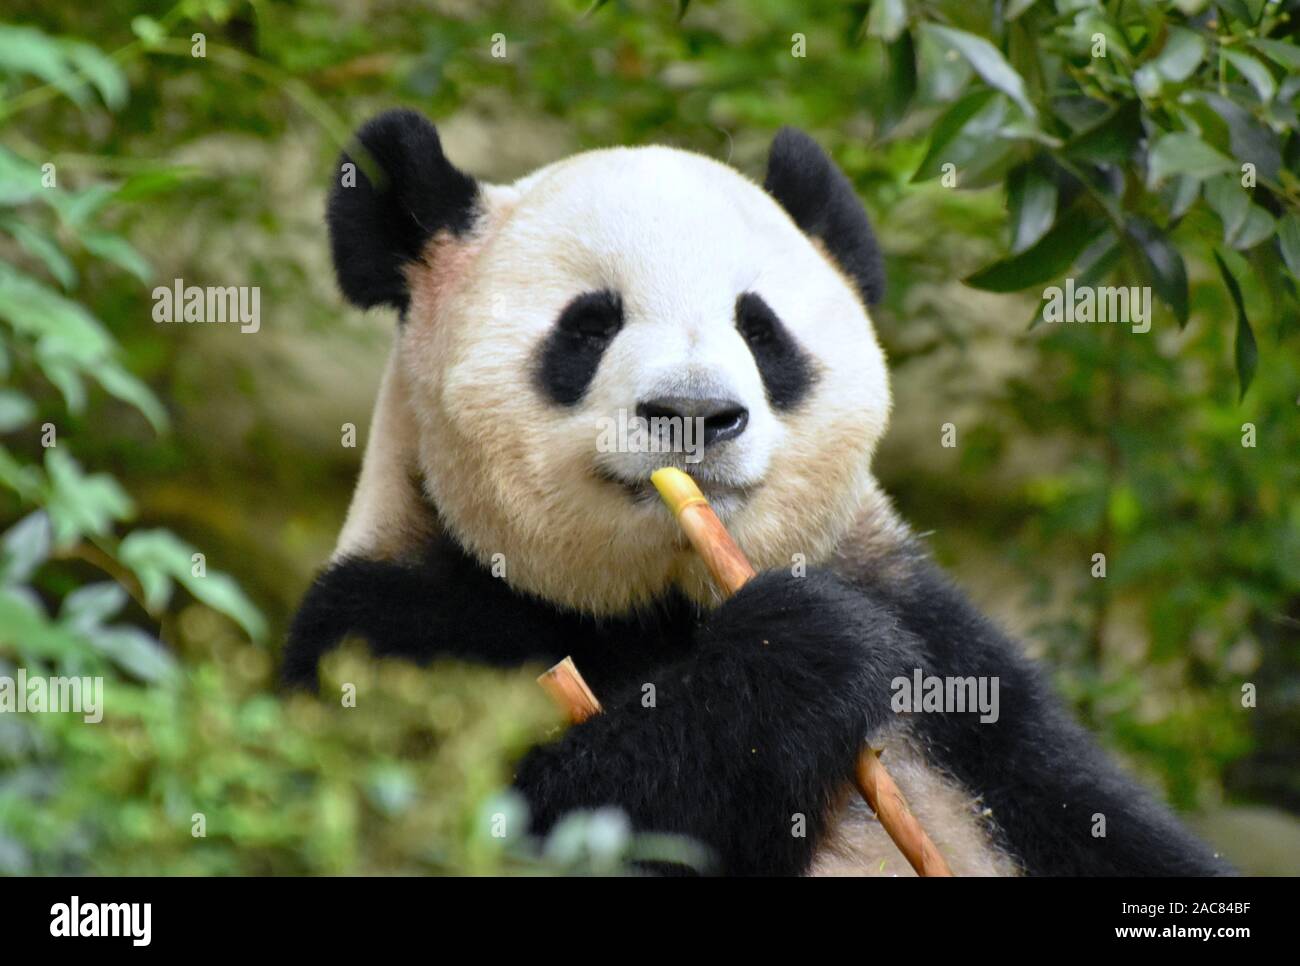 Cute panda bear eating bamboo close up Stock Photo